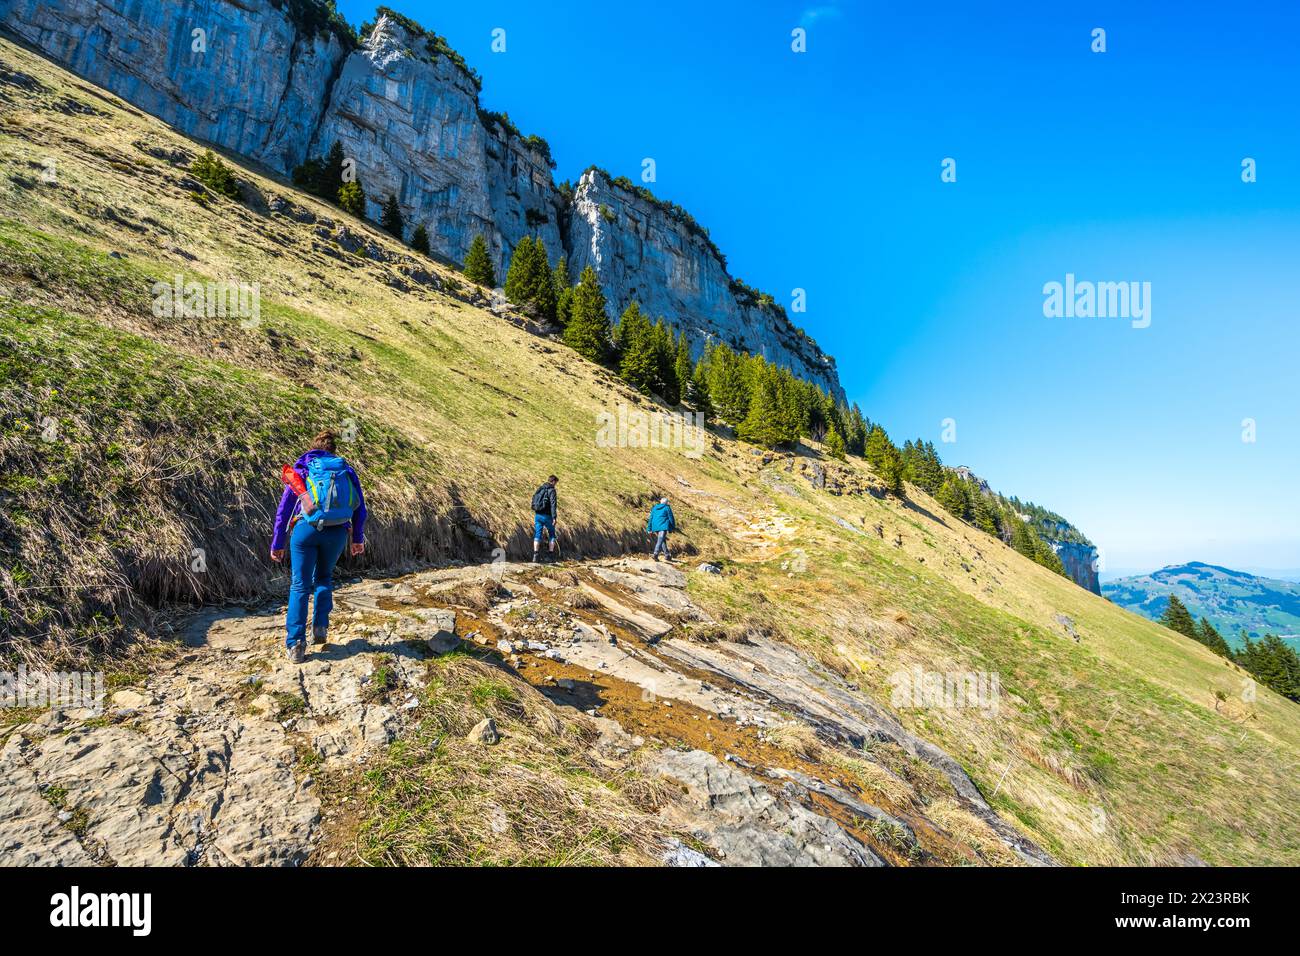 Descrizione: I turisti camminano lungo un pittoresco sentiero escursionistico attraverso un ripido terreno alpino con una parete rocciosa e sullo sfondo Ebenalp. Se Foto Stock